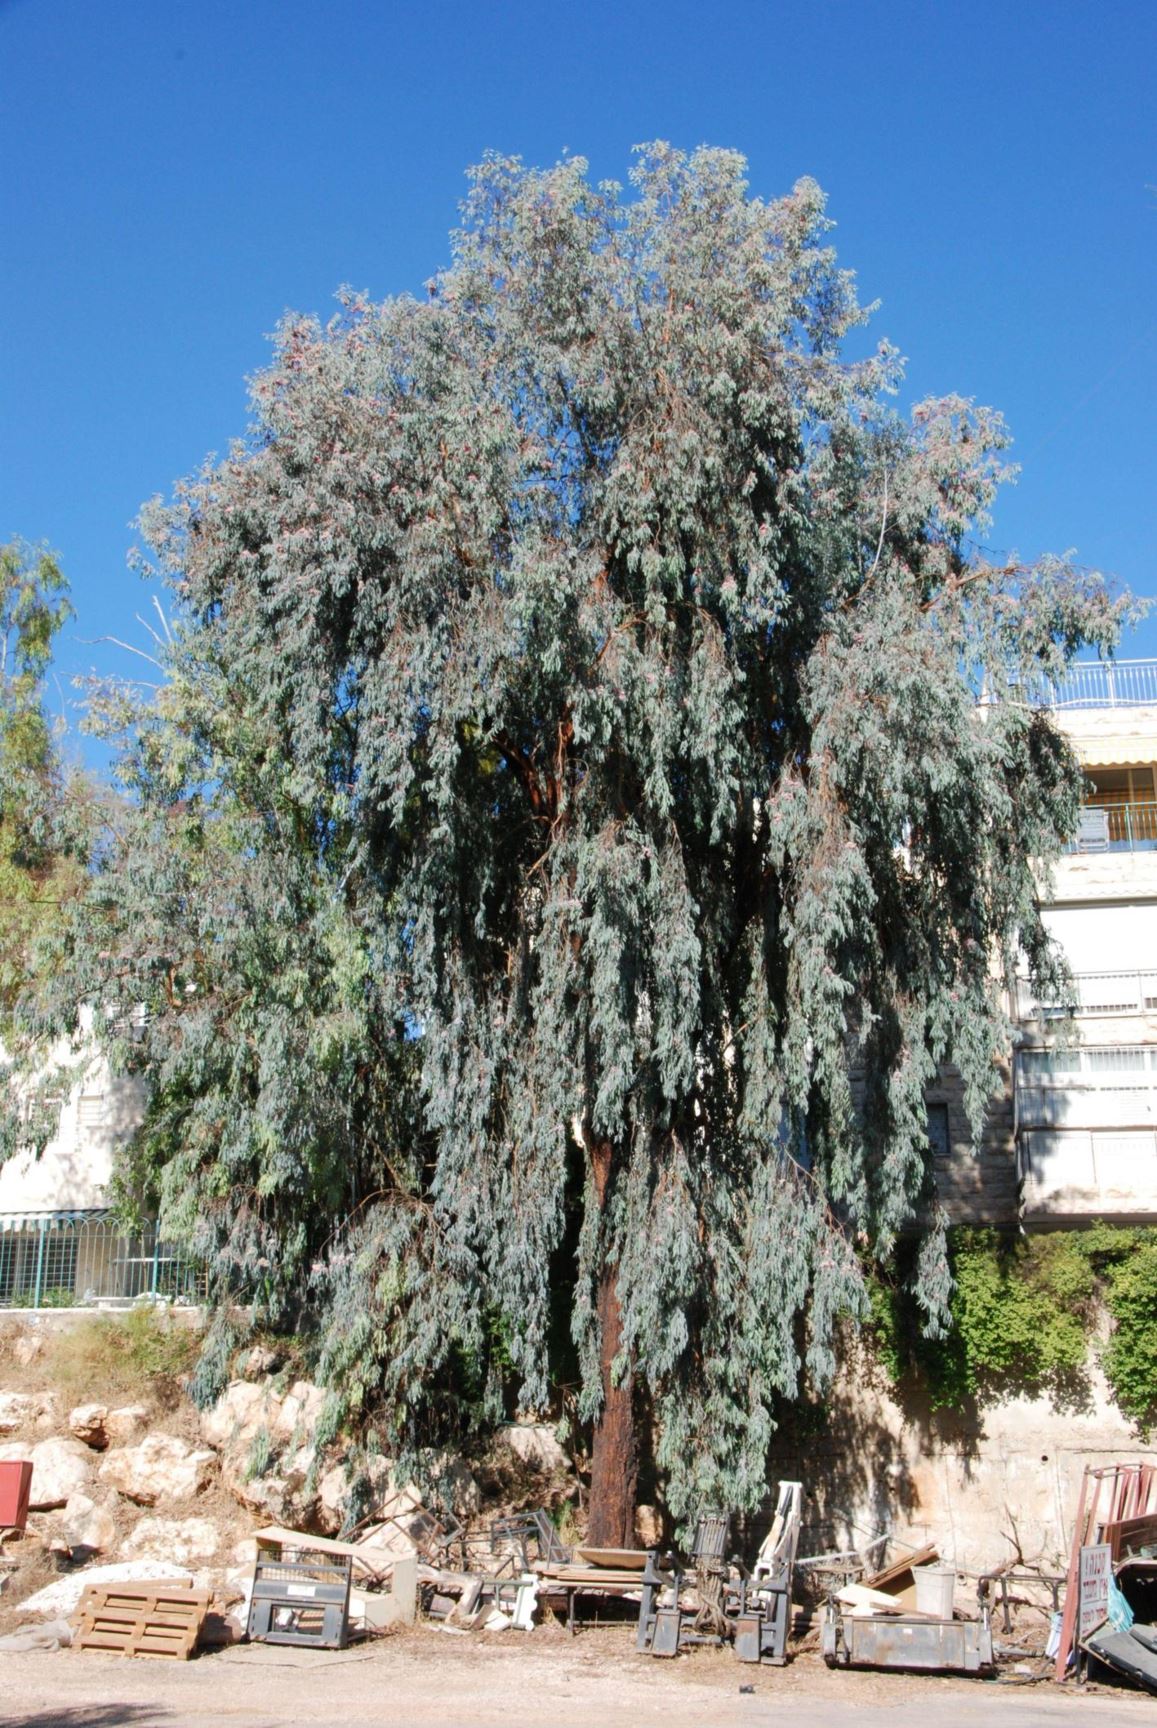 Eucalyptus sideroxylon - Red Ironbark, Pink Ironbark, Mugga, איקליפטוס כהה-קליפה, איקליפטוס כהה-קליפה